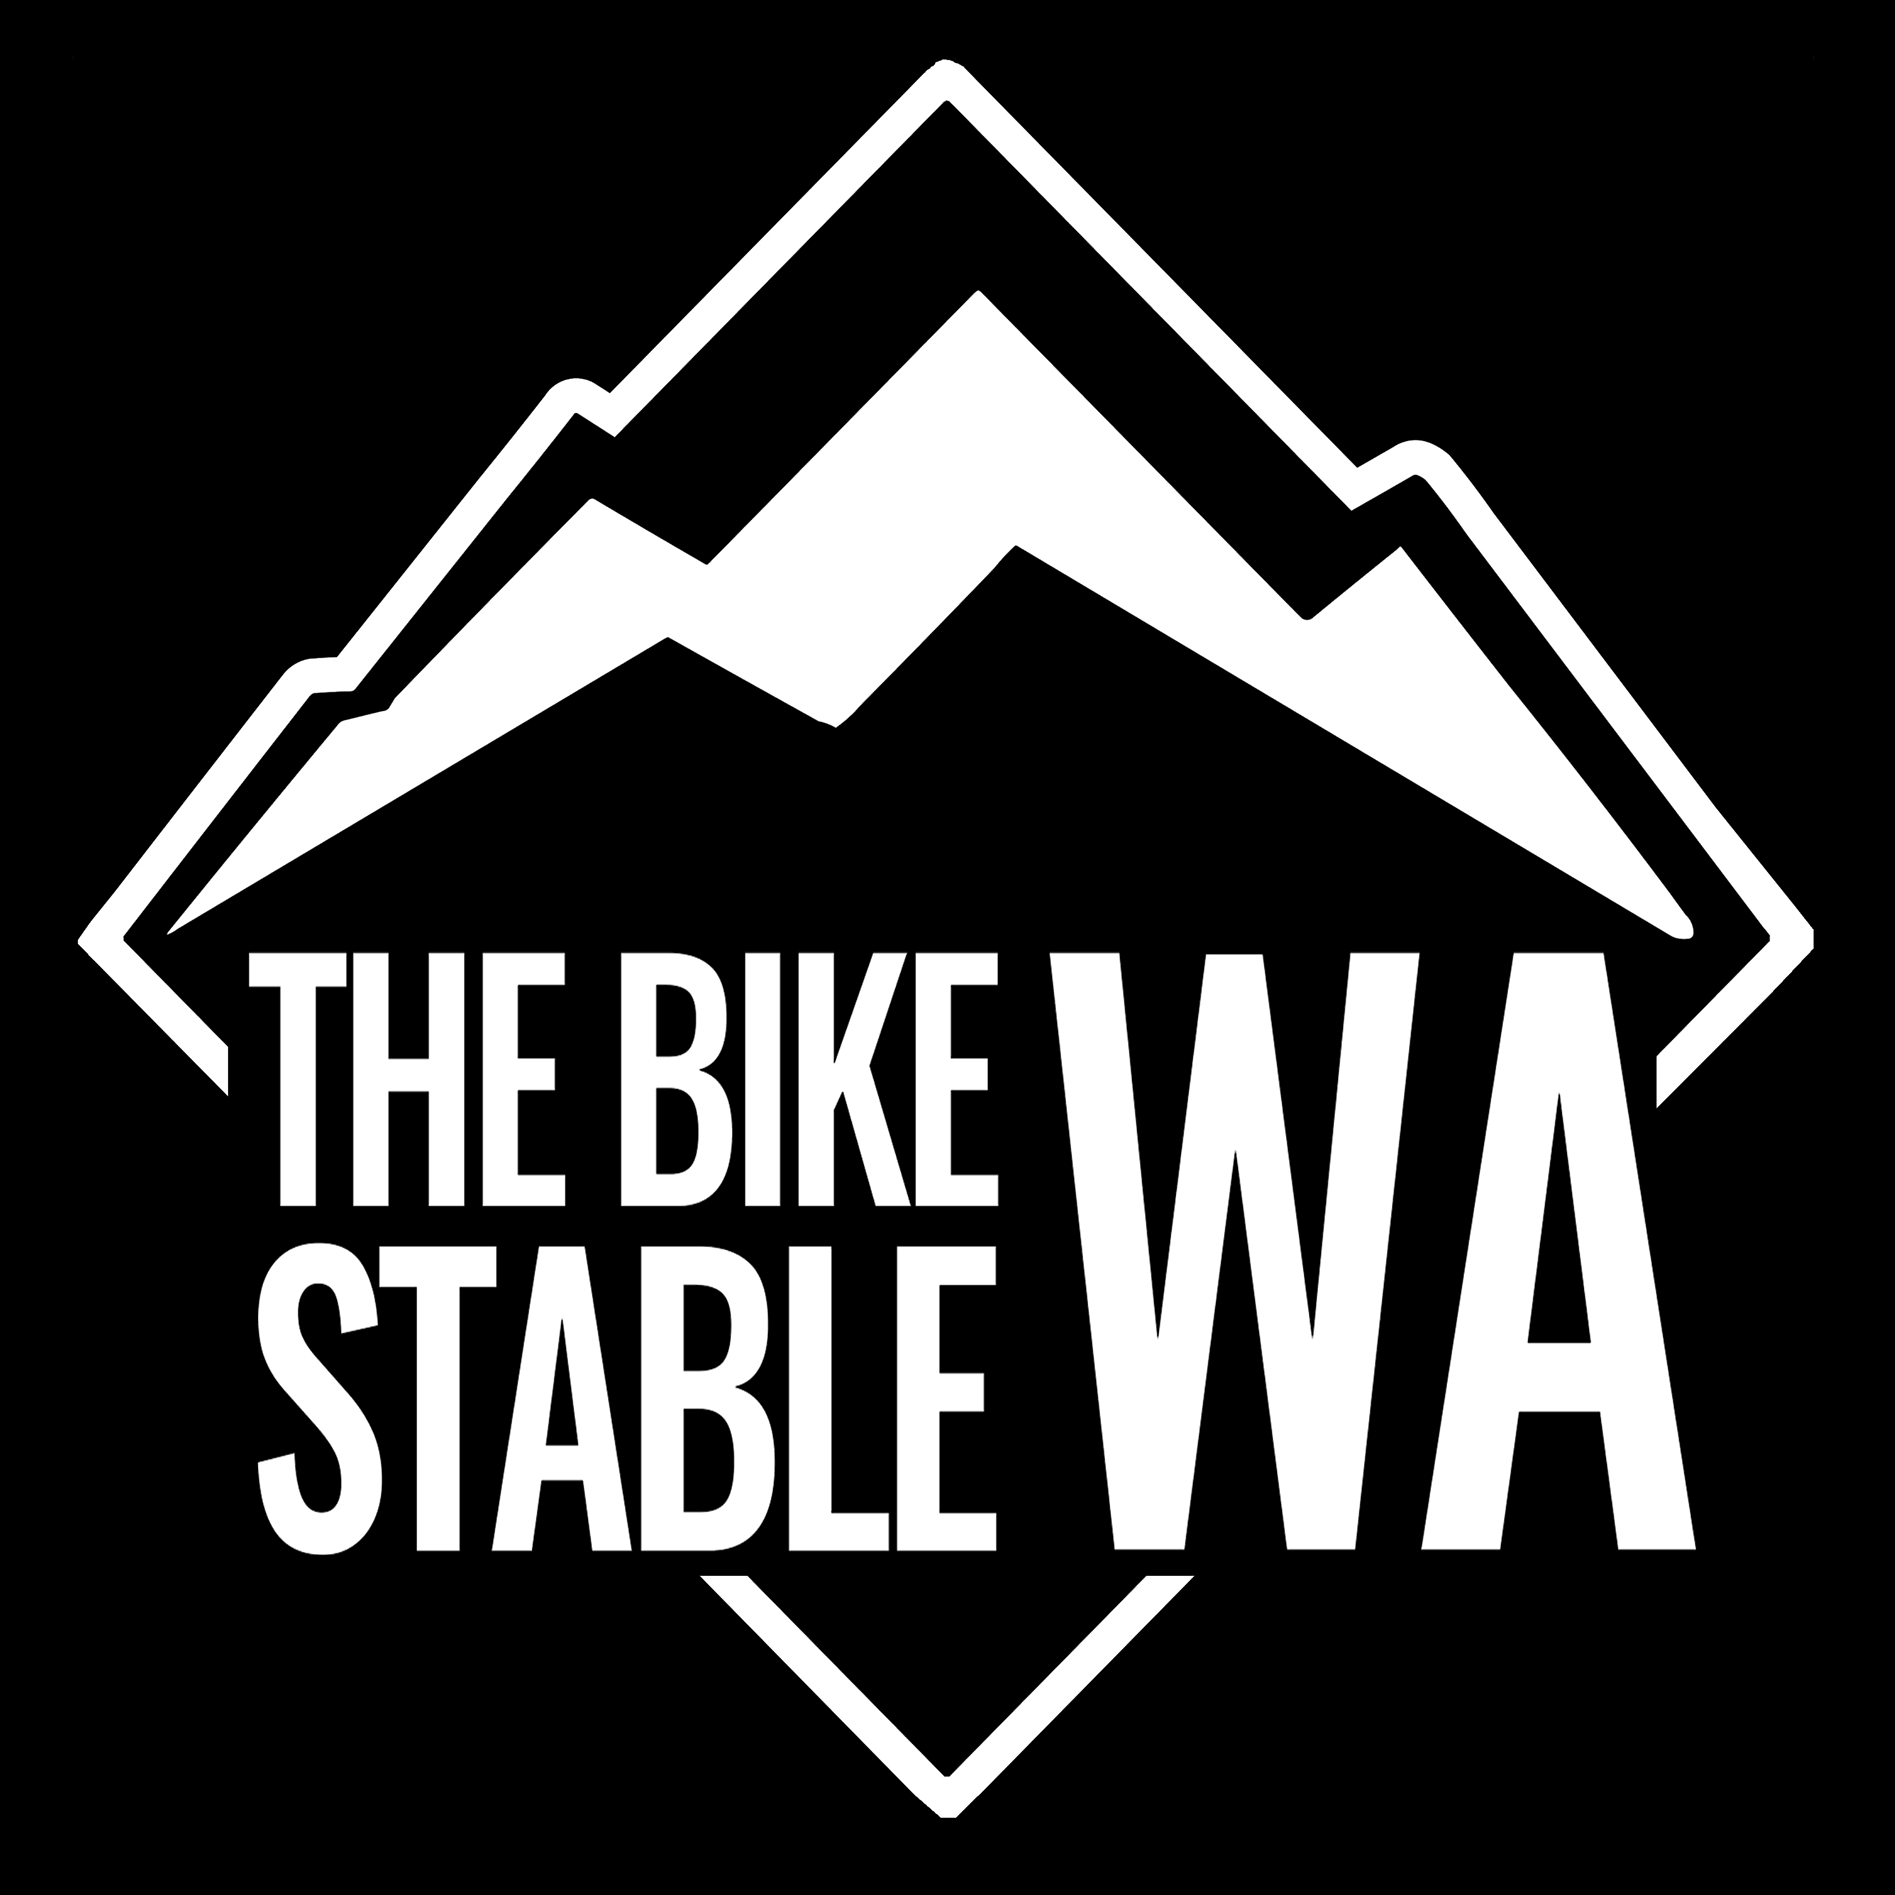 The Bike Stable WA